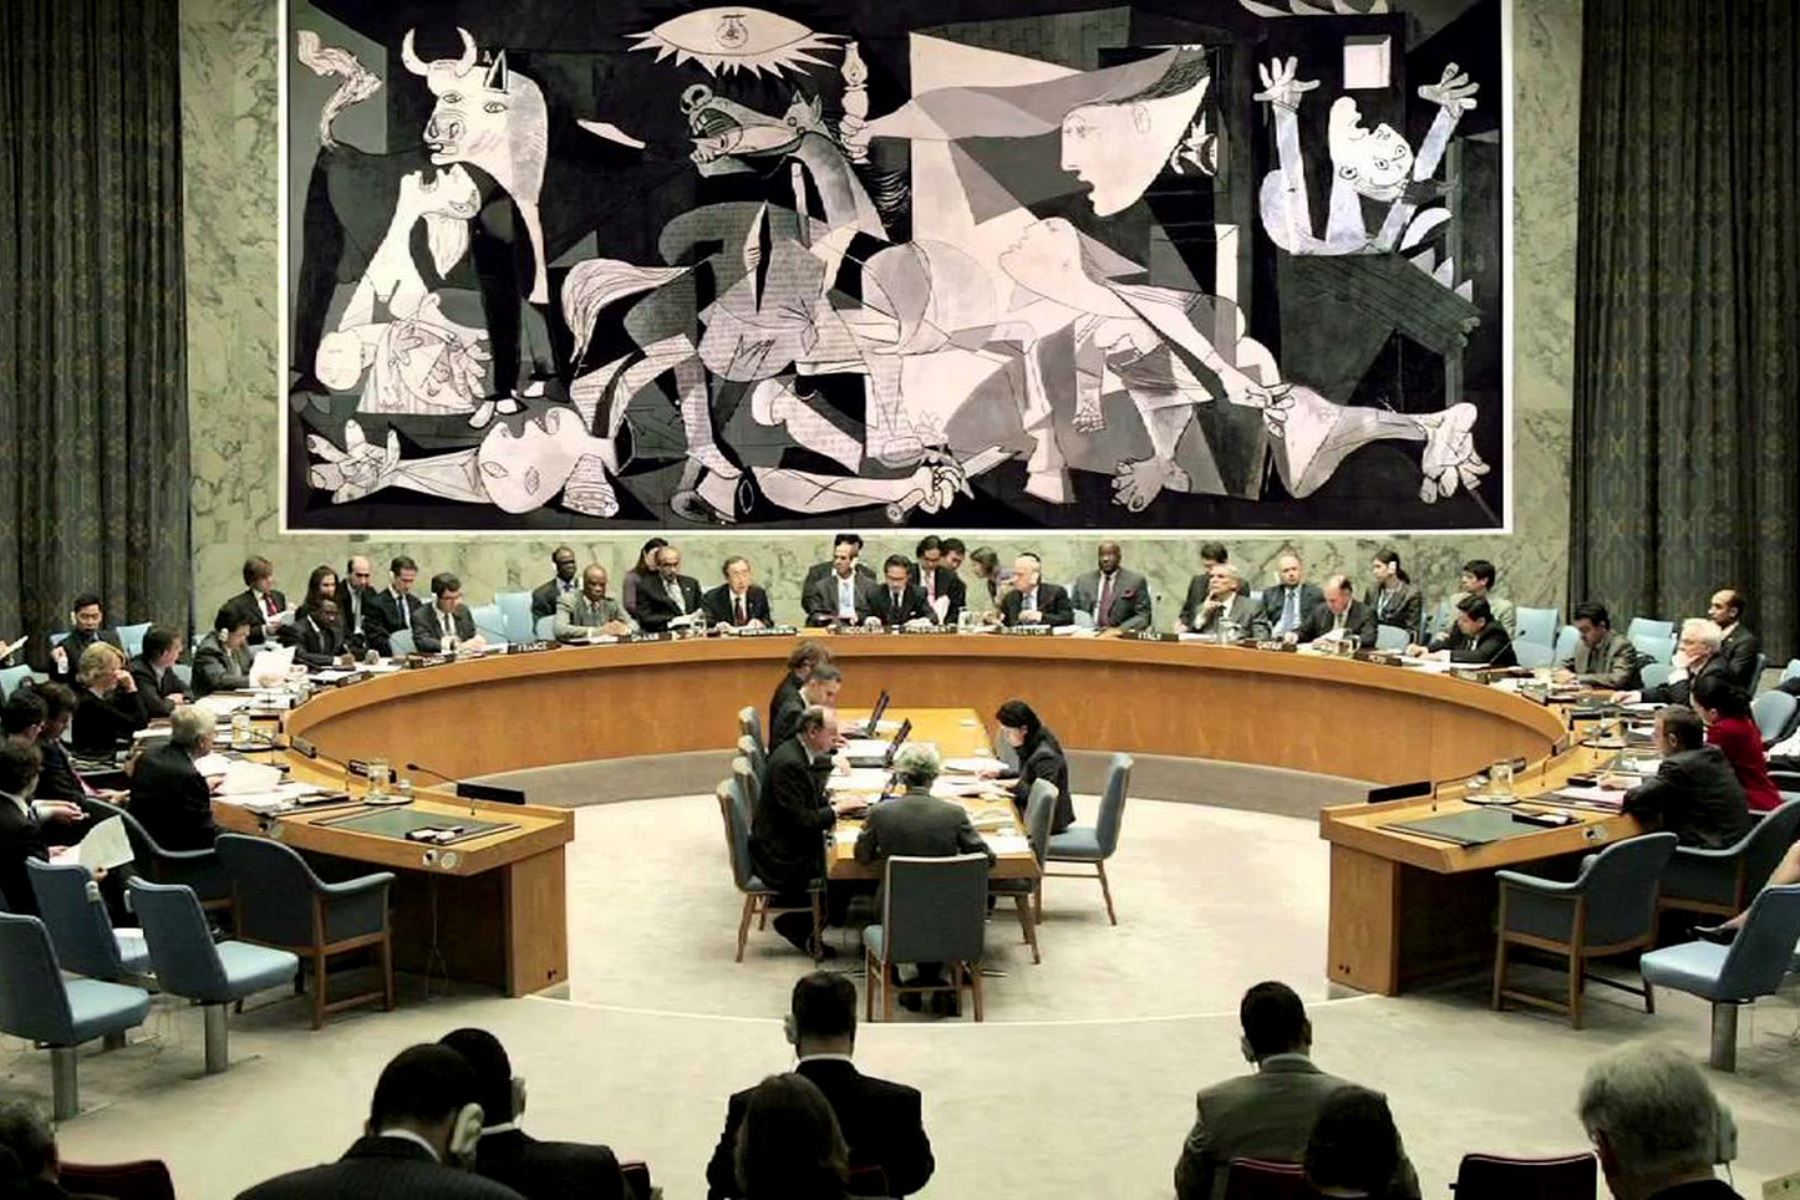 La presencia del tapiz, cerca del cual pasaban regularmente presidentes, ministros y embajadores ante el Consejo de Seguridad, tenía por objeto sensibilizarlos sobre la tragedia de la guerra. Foto: Internet